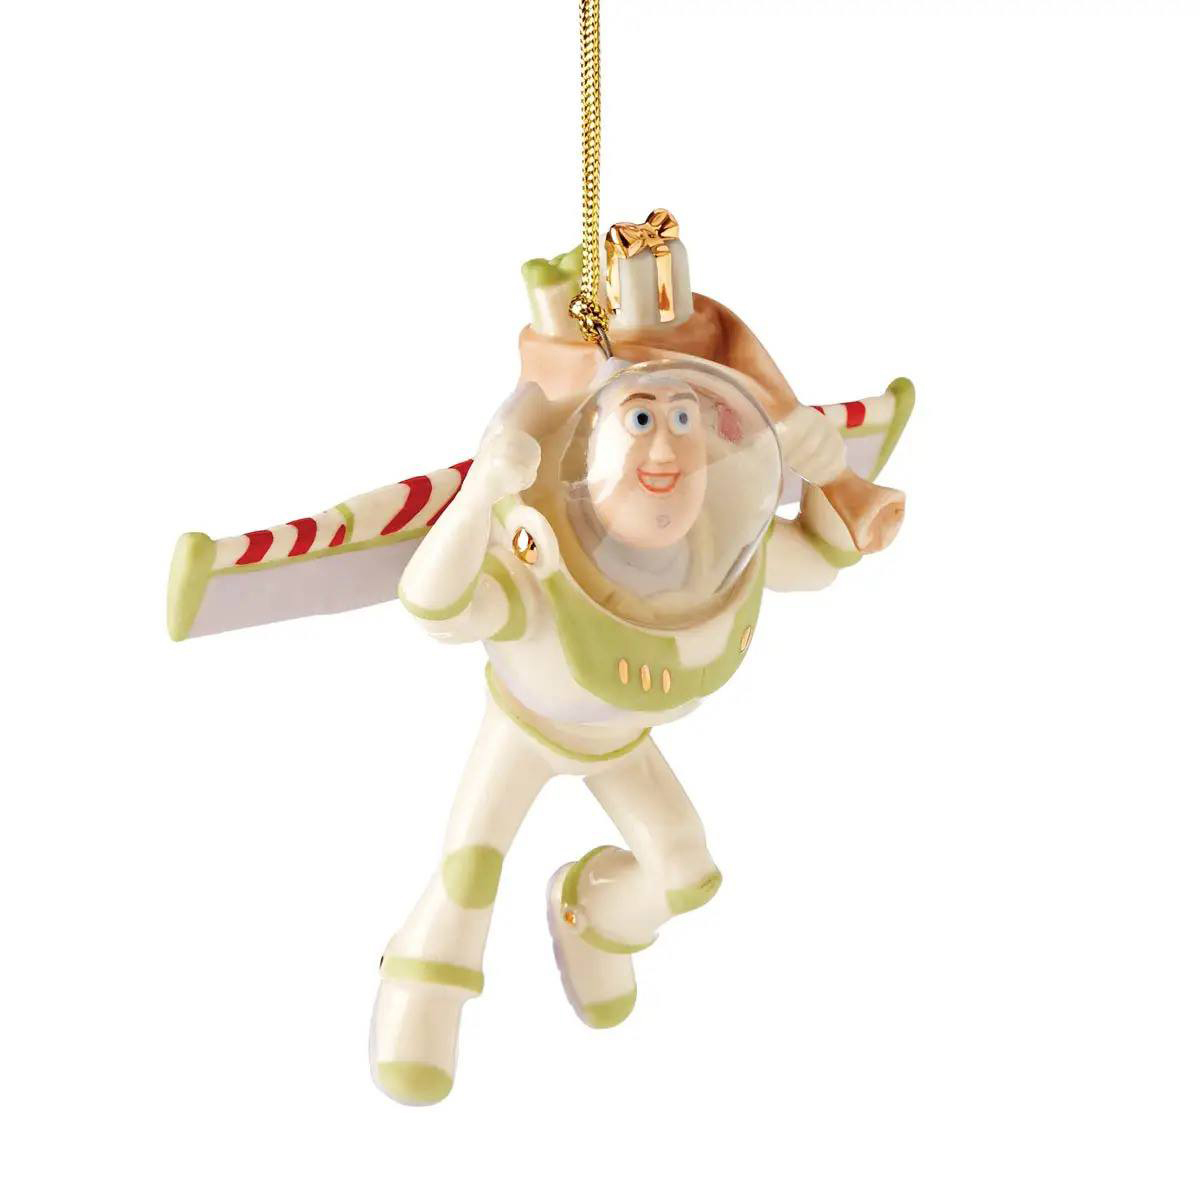 Lenox(R) Buzz Lightyear Ornament